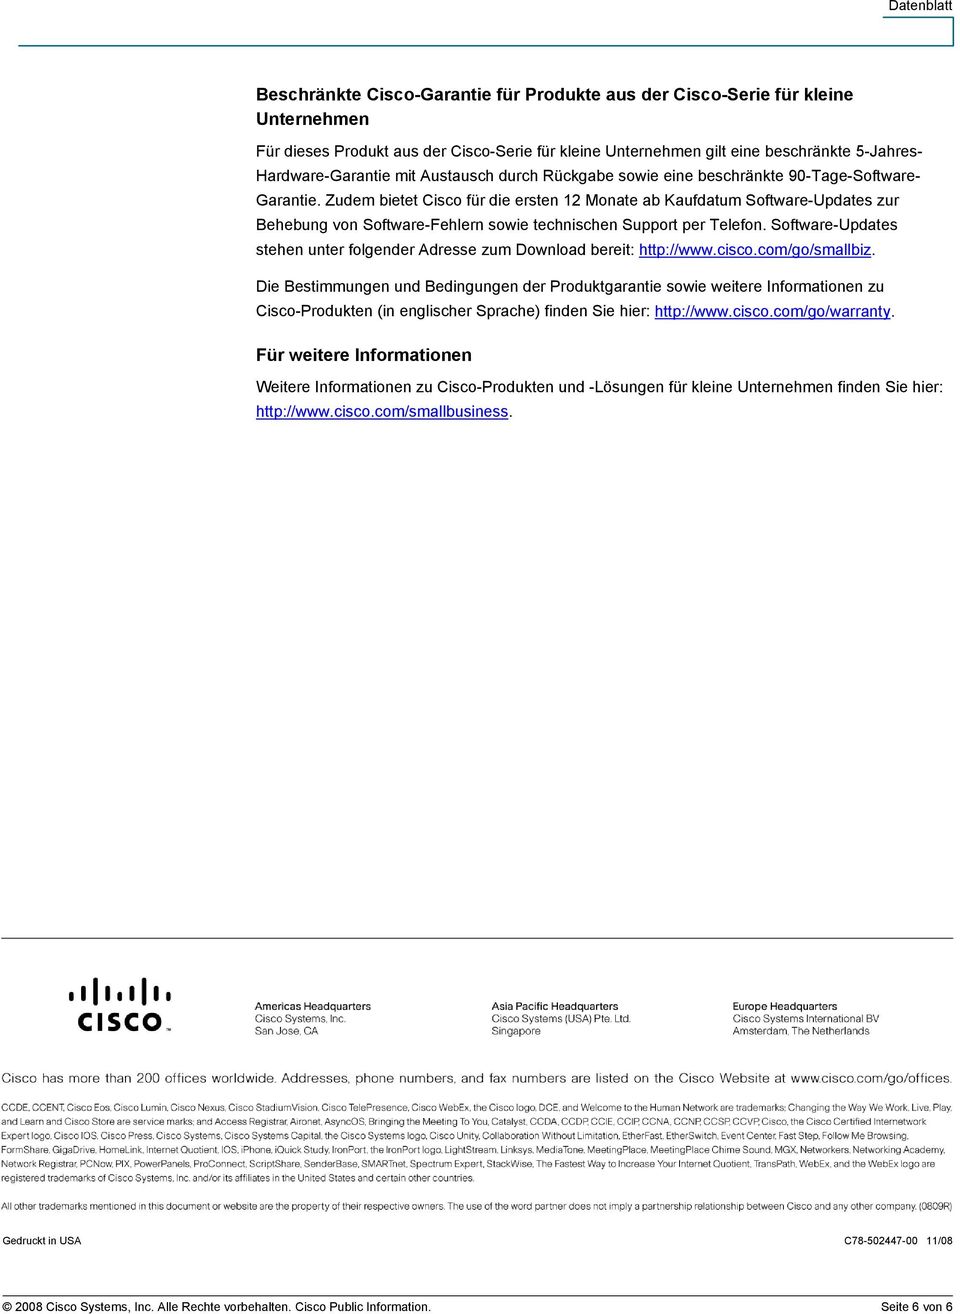 Zudem bietet Cisco für die ersten 12 Monate ab Kaufdatum Software-Updates zur Behebung von Software-Fehlern sowie technischen Support per Telefon.